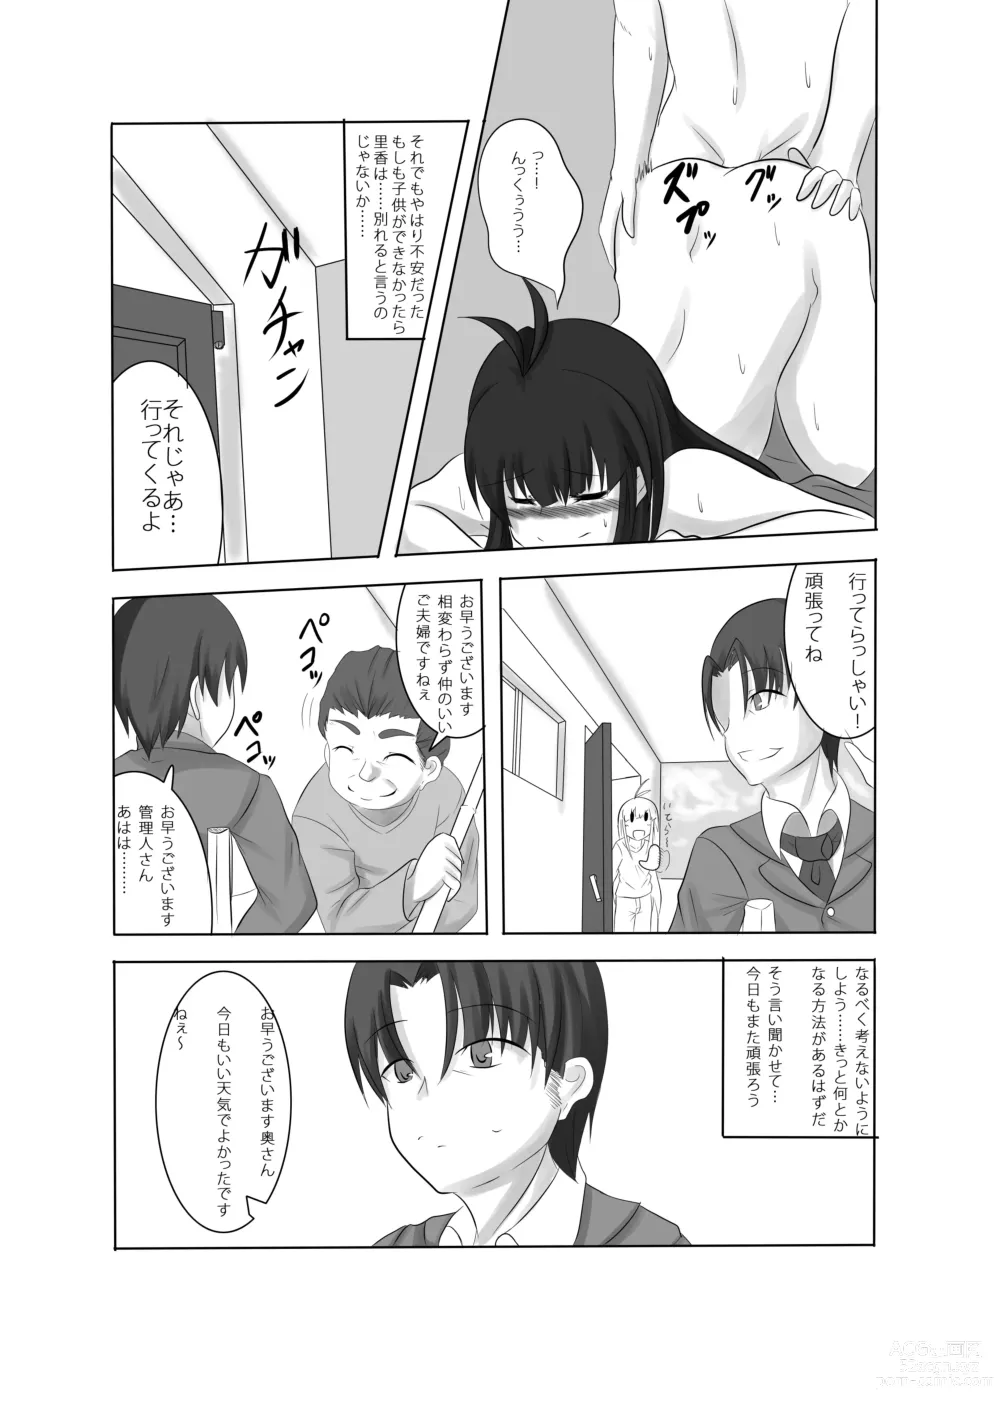 Page 7 of doujinshi Anata no Ko o Haramu made